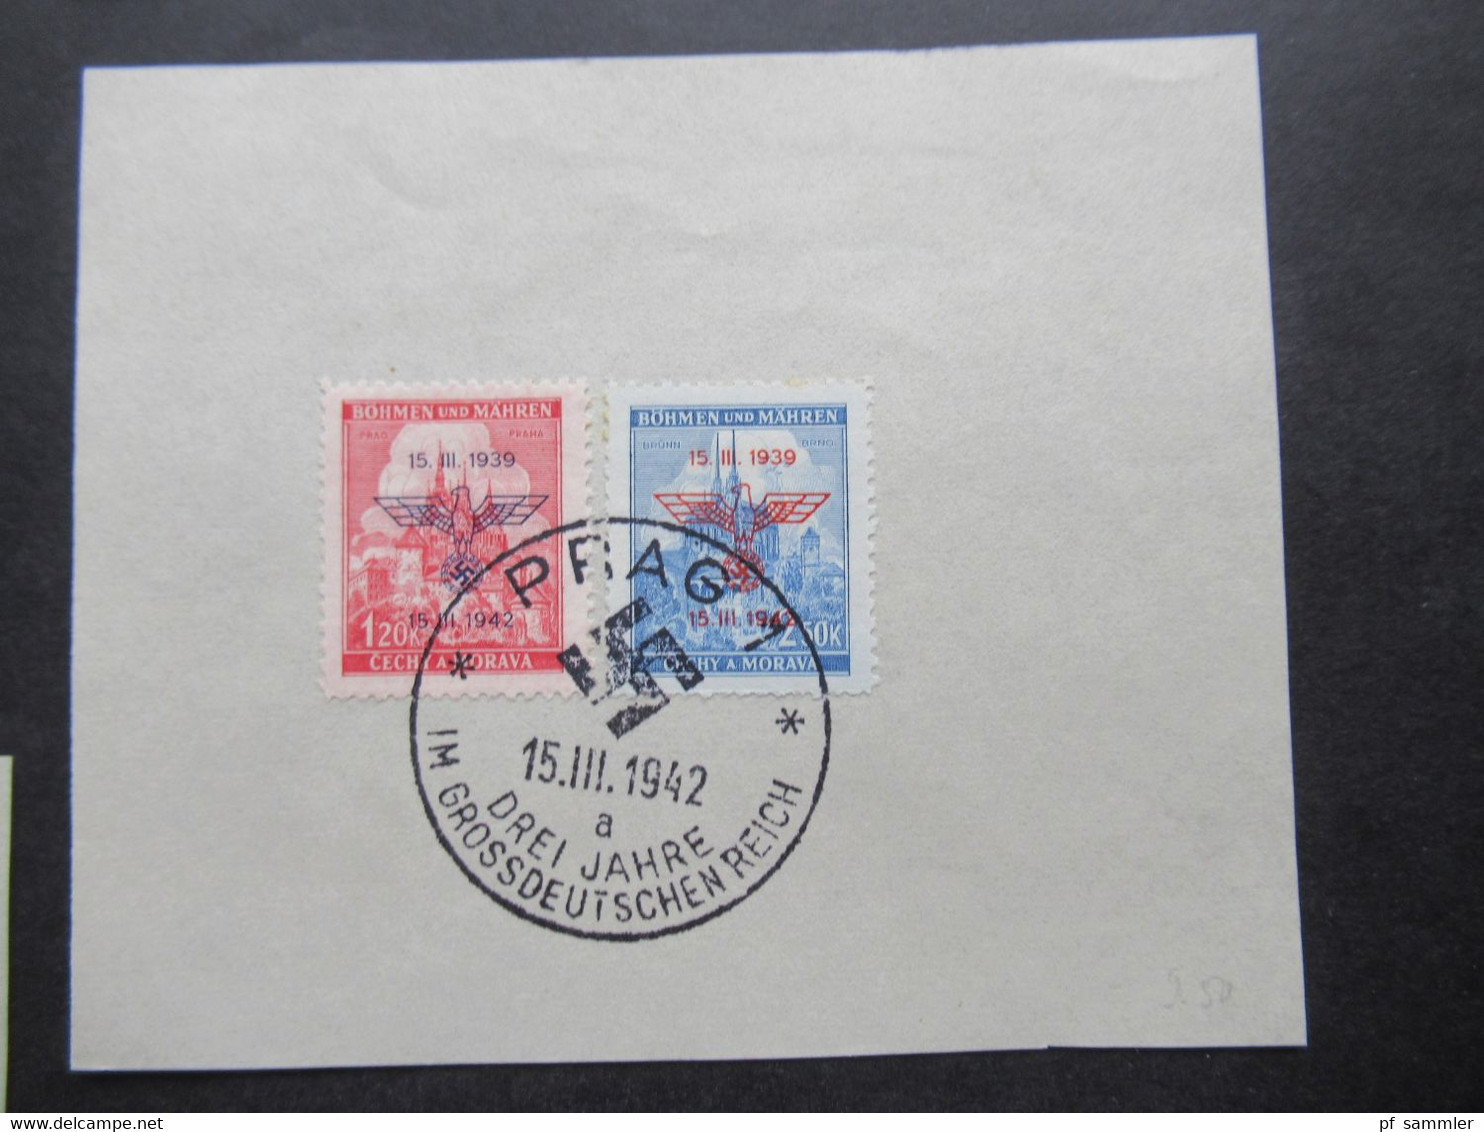 Böhmen Und Mähren 15.3.1942  Nr.83 / 84 Briefstücke Mit 5 Verschiedenen SSt. Drei Jahre Im Grossdeutschen Reich - Used Stamps